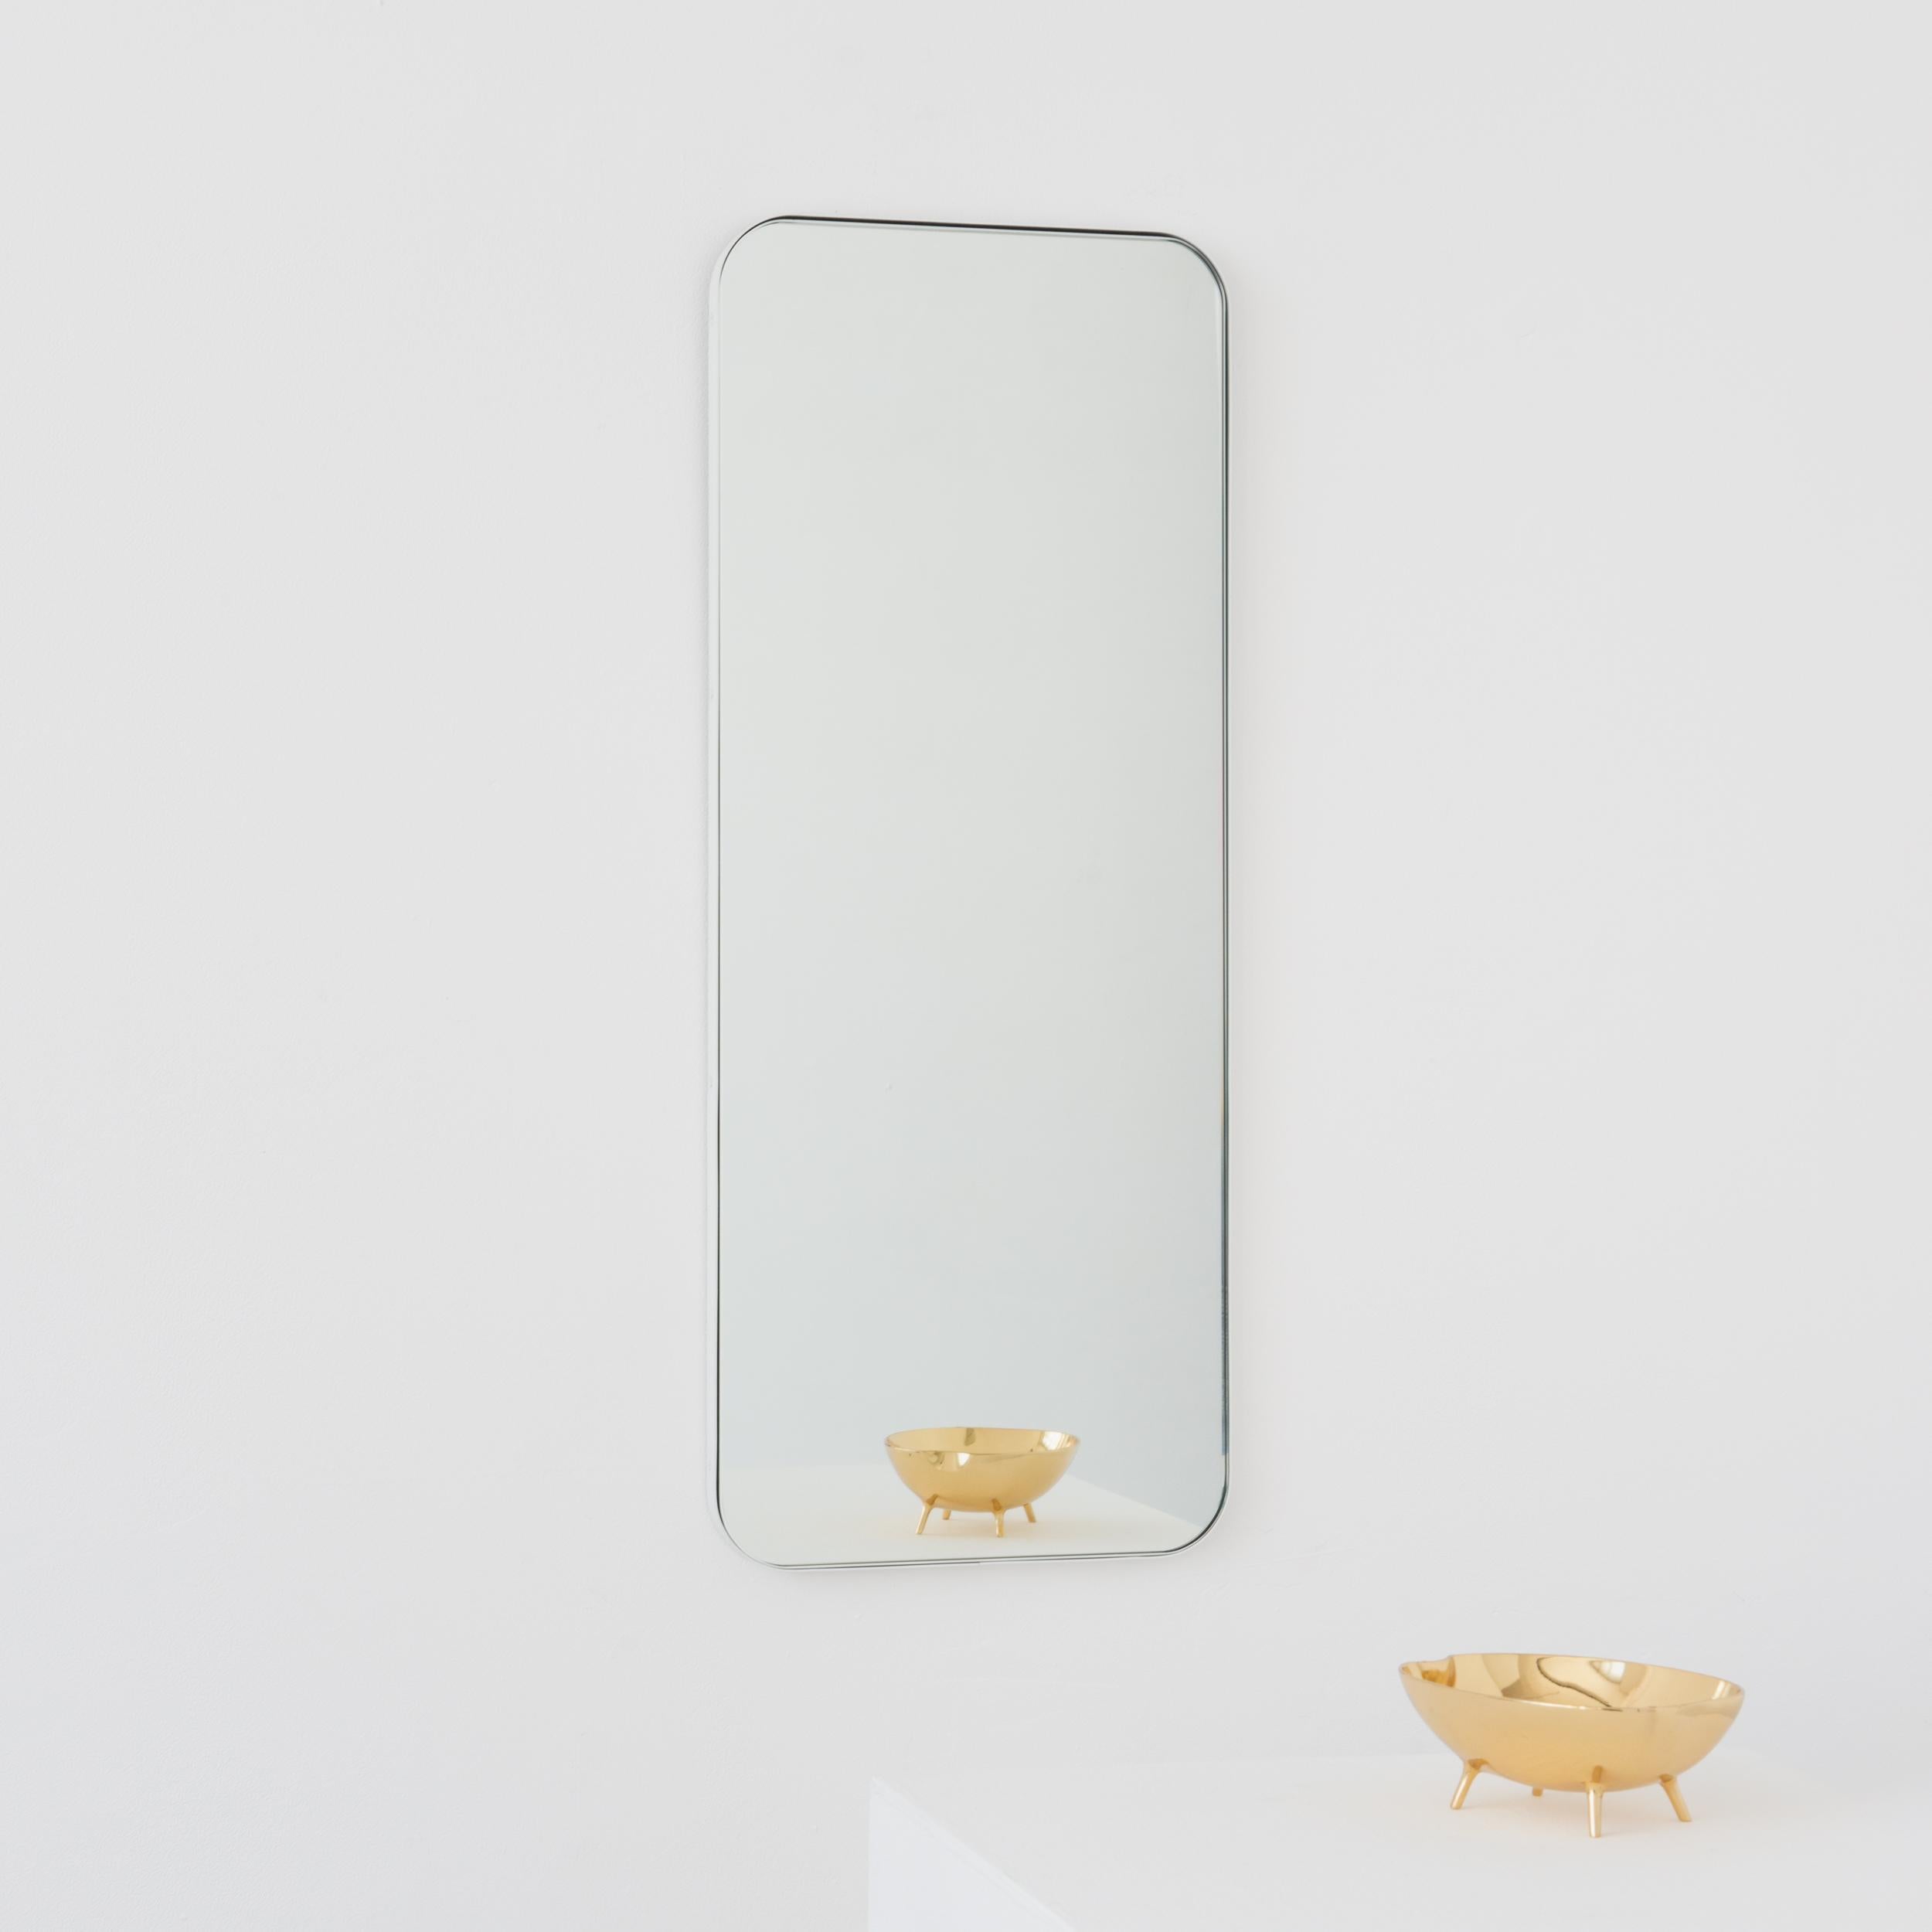 Miroir rectangulaire minimaliste avec un cadre blanc moderne. Une partie de la charmante collection Quadris, conçue et fabriquée à la main à Londres, au Royaume-Uni. 

Fourni avec une barre en z spécialisée pour une installation facile. Un système